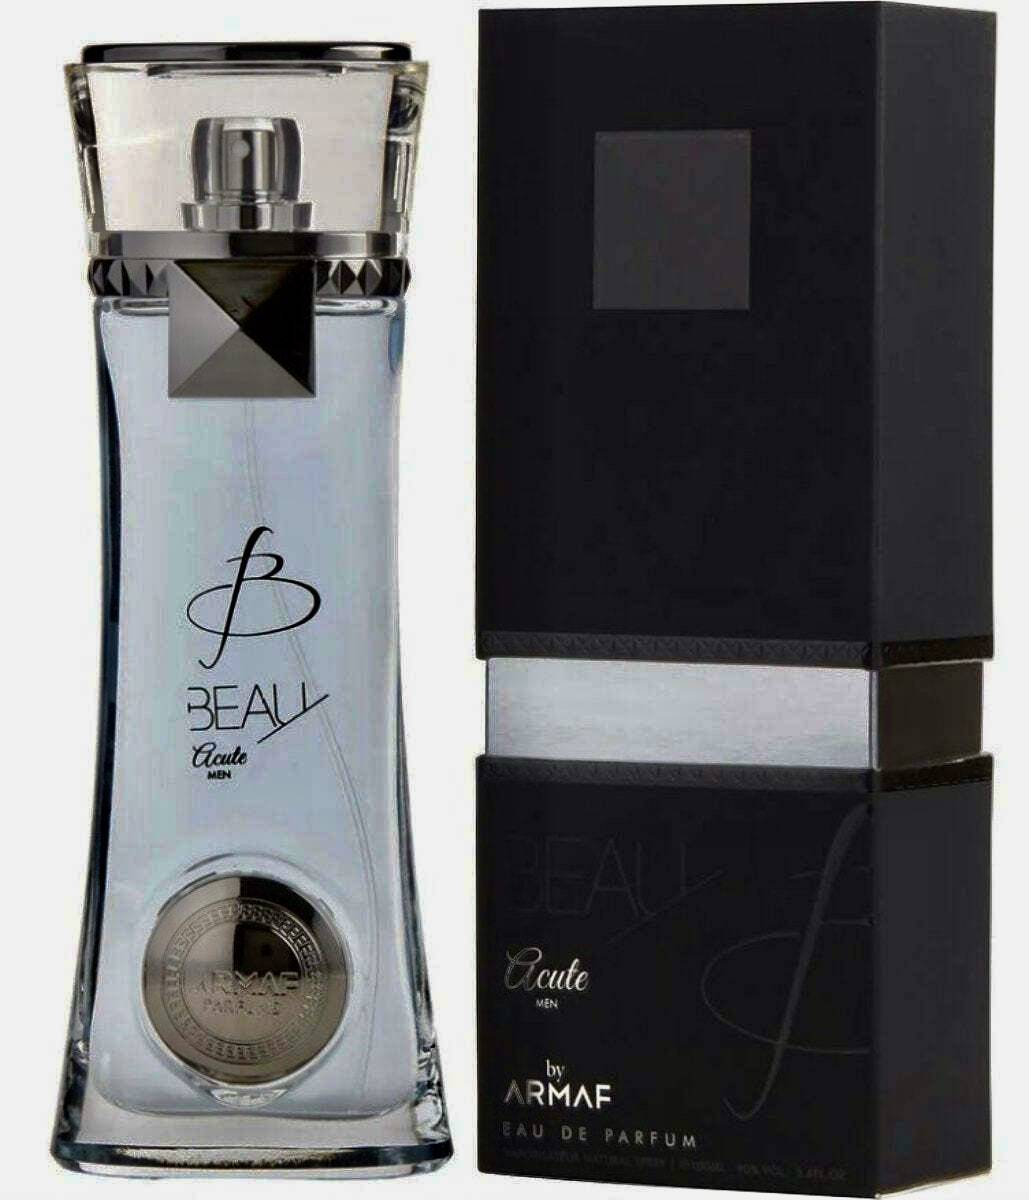 Beau Acute by Armaf cologne 3.4 eau de parfum Hybrid of “platinum